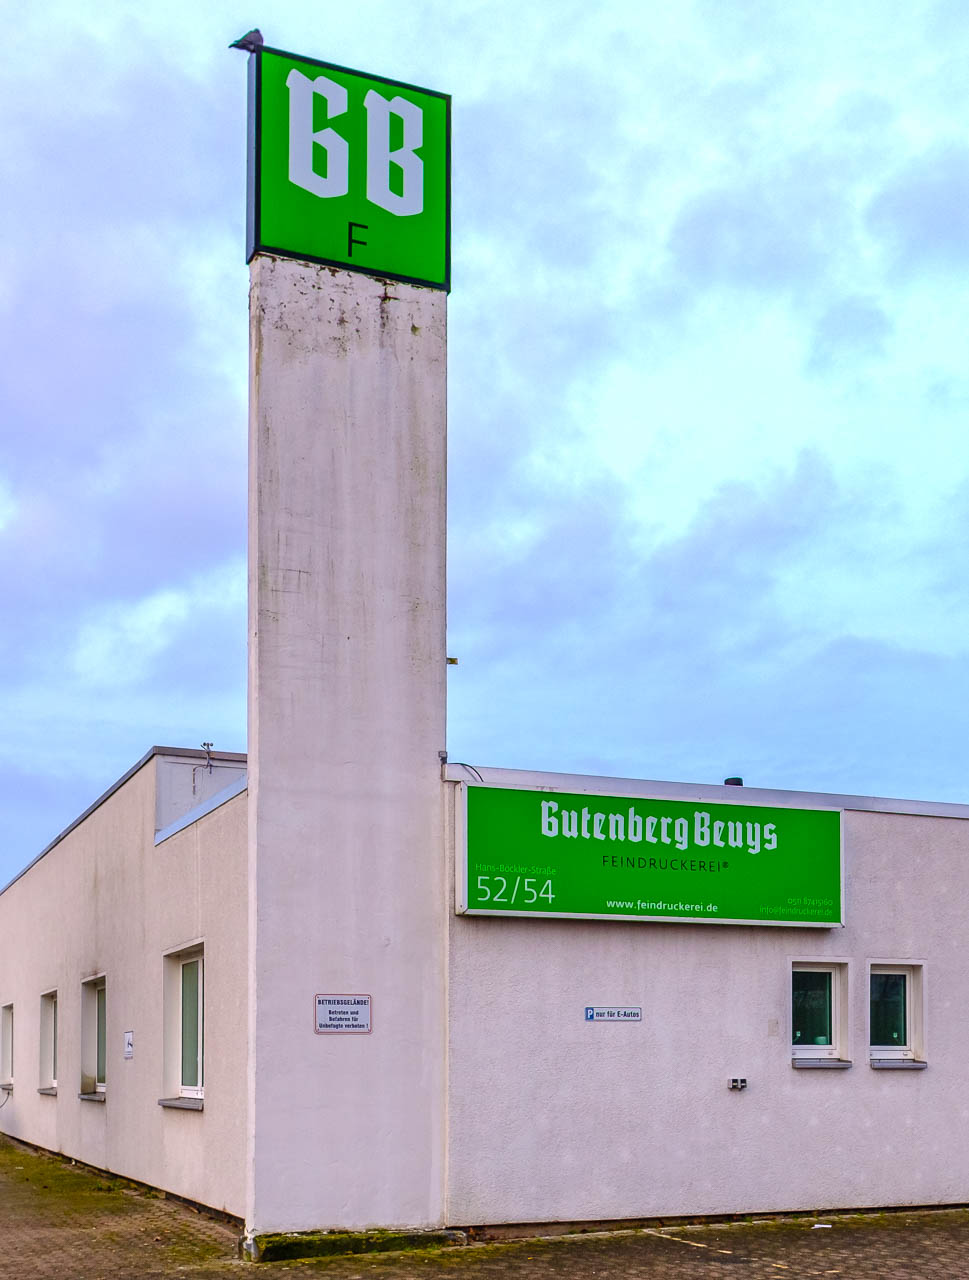 Die Gutenberg Beuys Feindruckerei in Langenhagen bei Hannover hat sich darauf spezialisiert, Produkte im 120er-Feinrasterverfahren herzustellen. In diesem Betrieb entstand das Buch "Nomaden unserer Zeit. Wanderschäfereien in Schleswig-Holstein" mit Fotografien von Holger Rüdel.